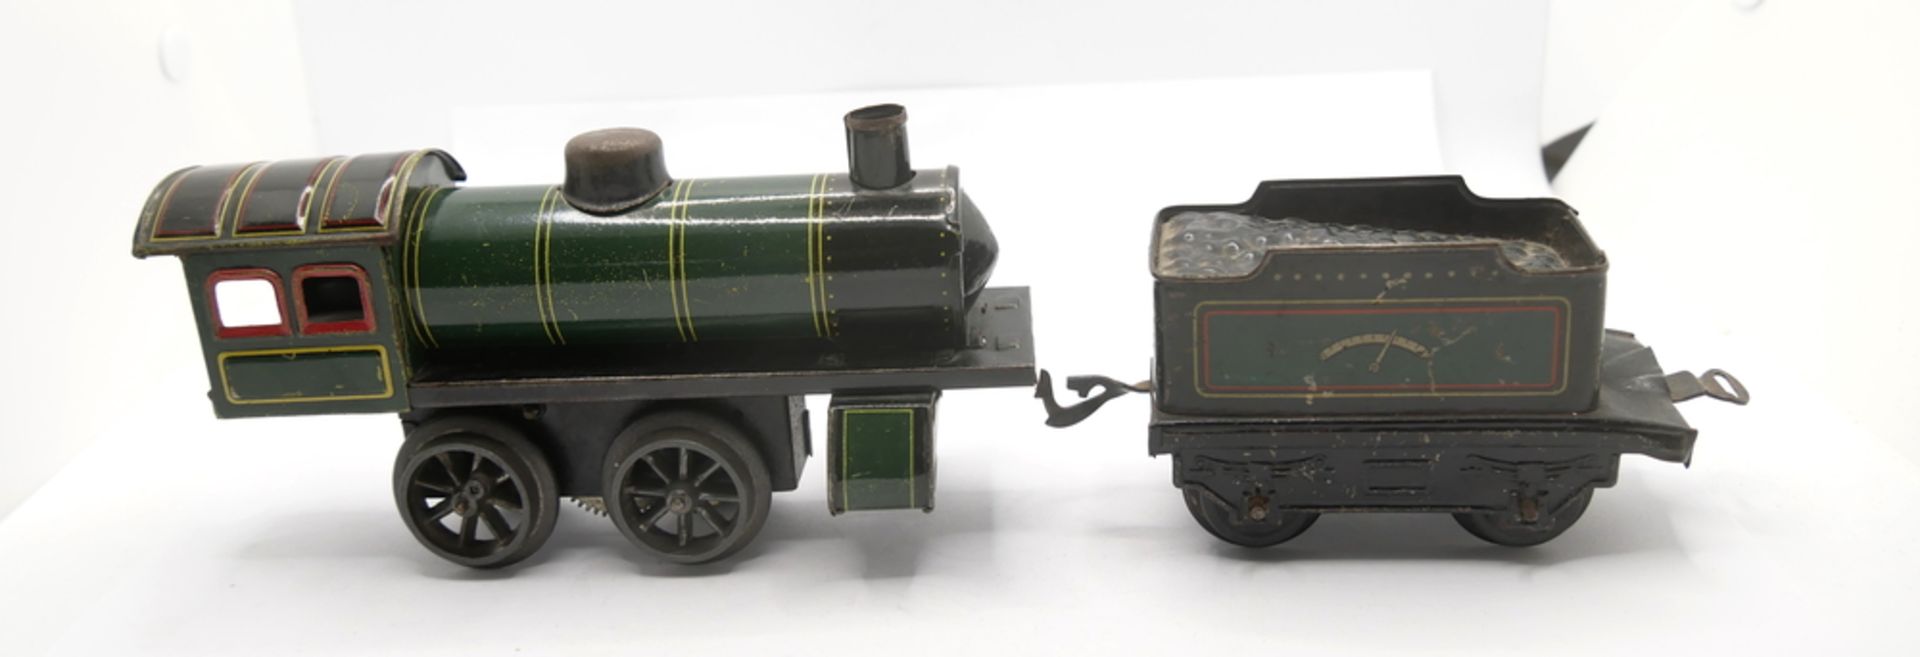 Antikes Blechspielzeug - Lokomotive mit Tender von GBN Bavaria, mit Schlüssel. Gebrauchter Zustand. - Bild 2 aus 2